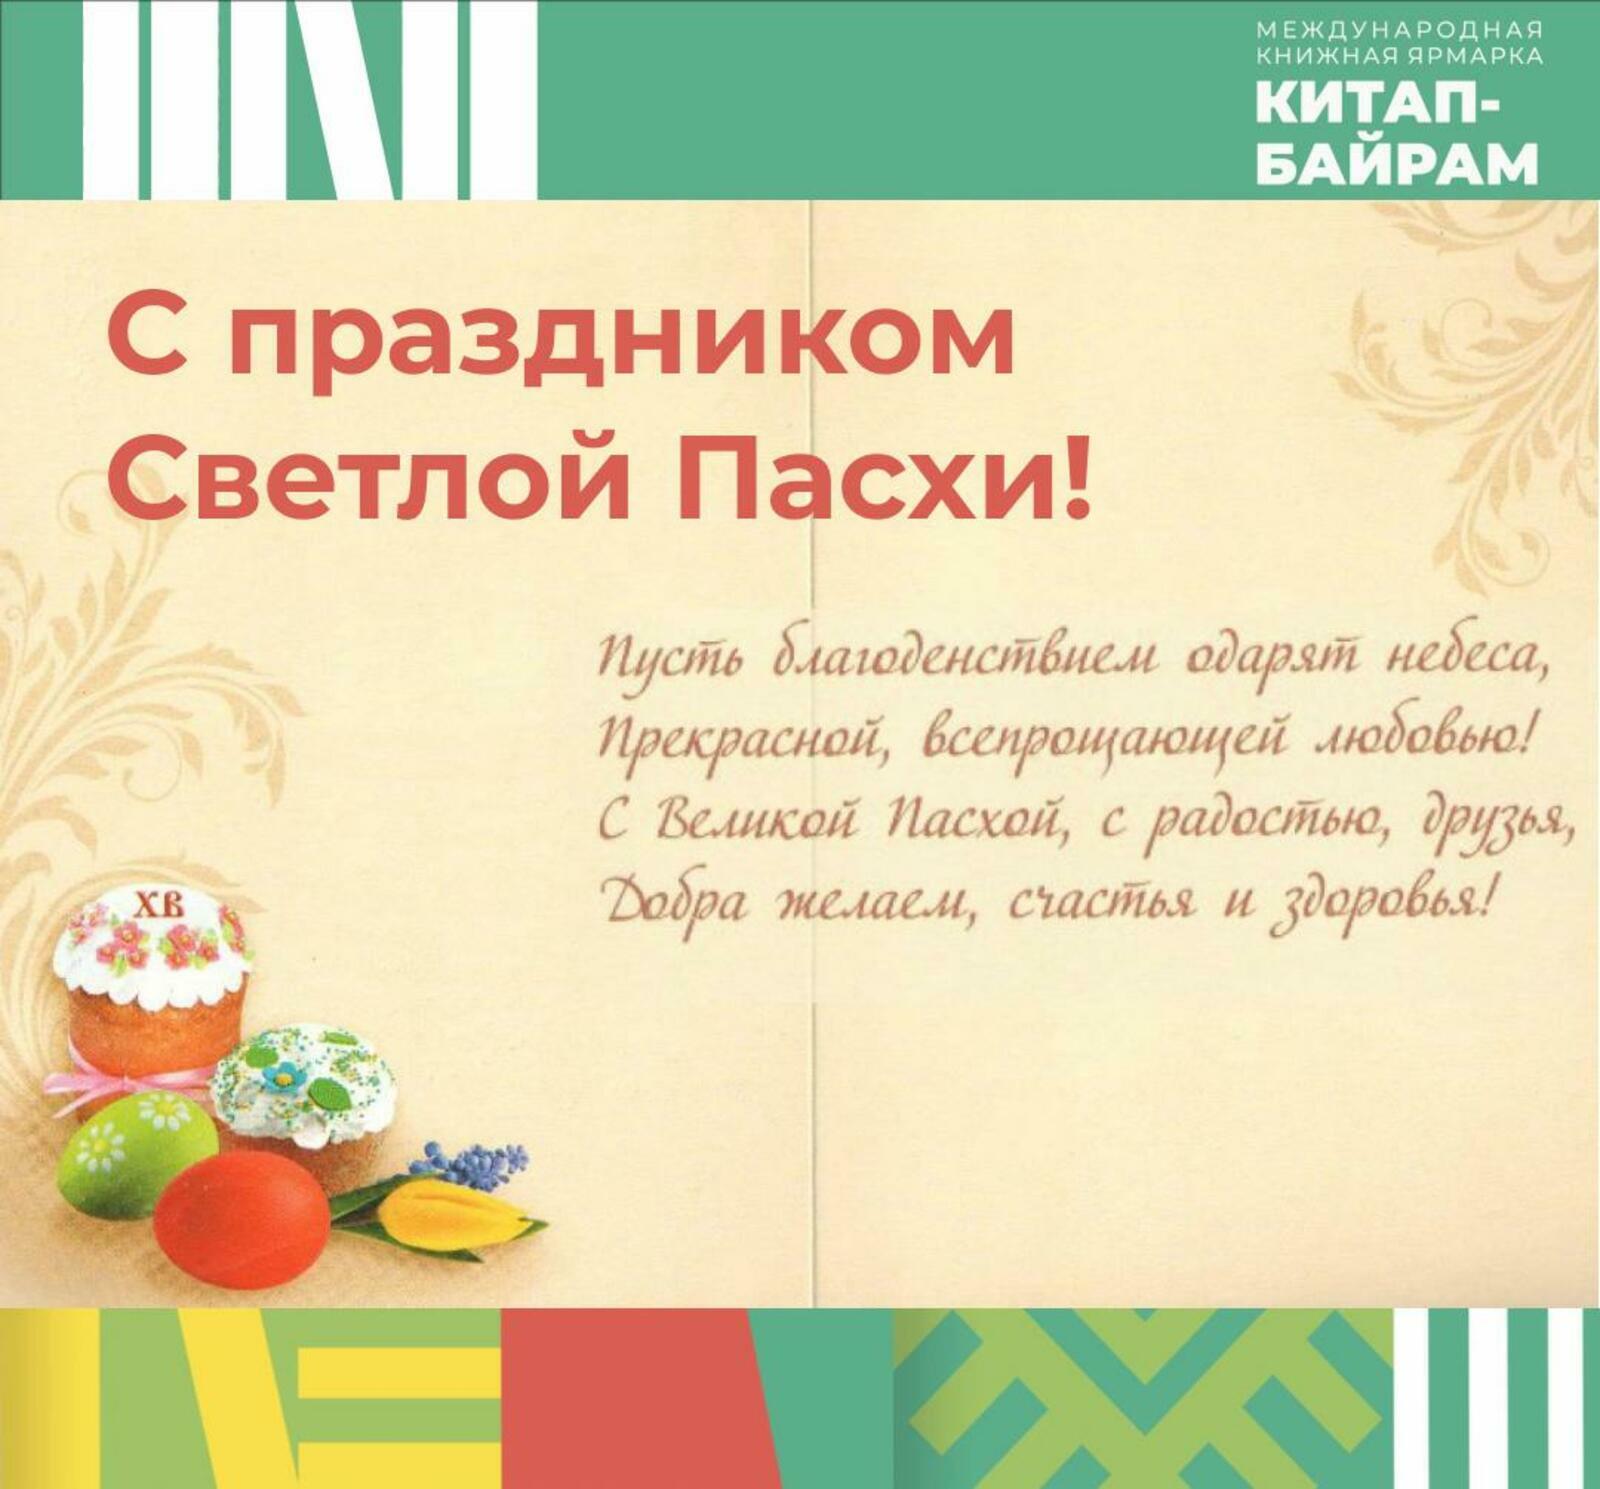 Пасха дала русской литературе образы, мотивы, сюжеты, эпизоды и жанр пасхального рассказа